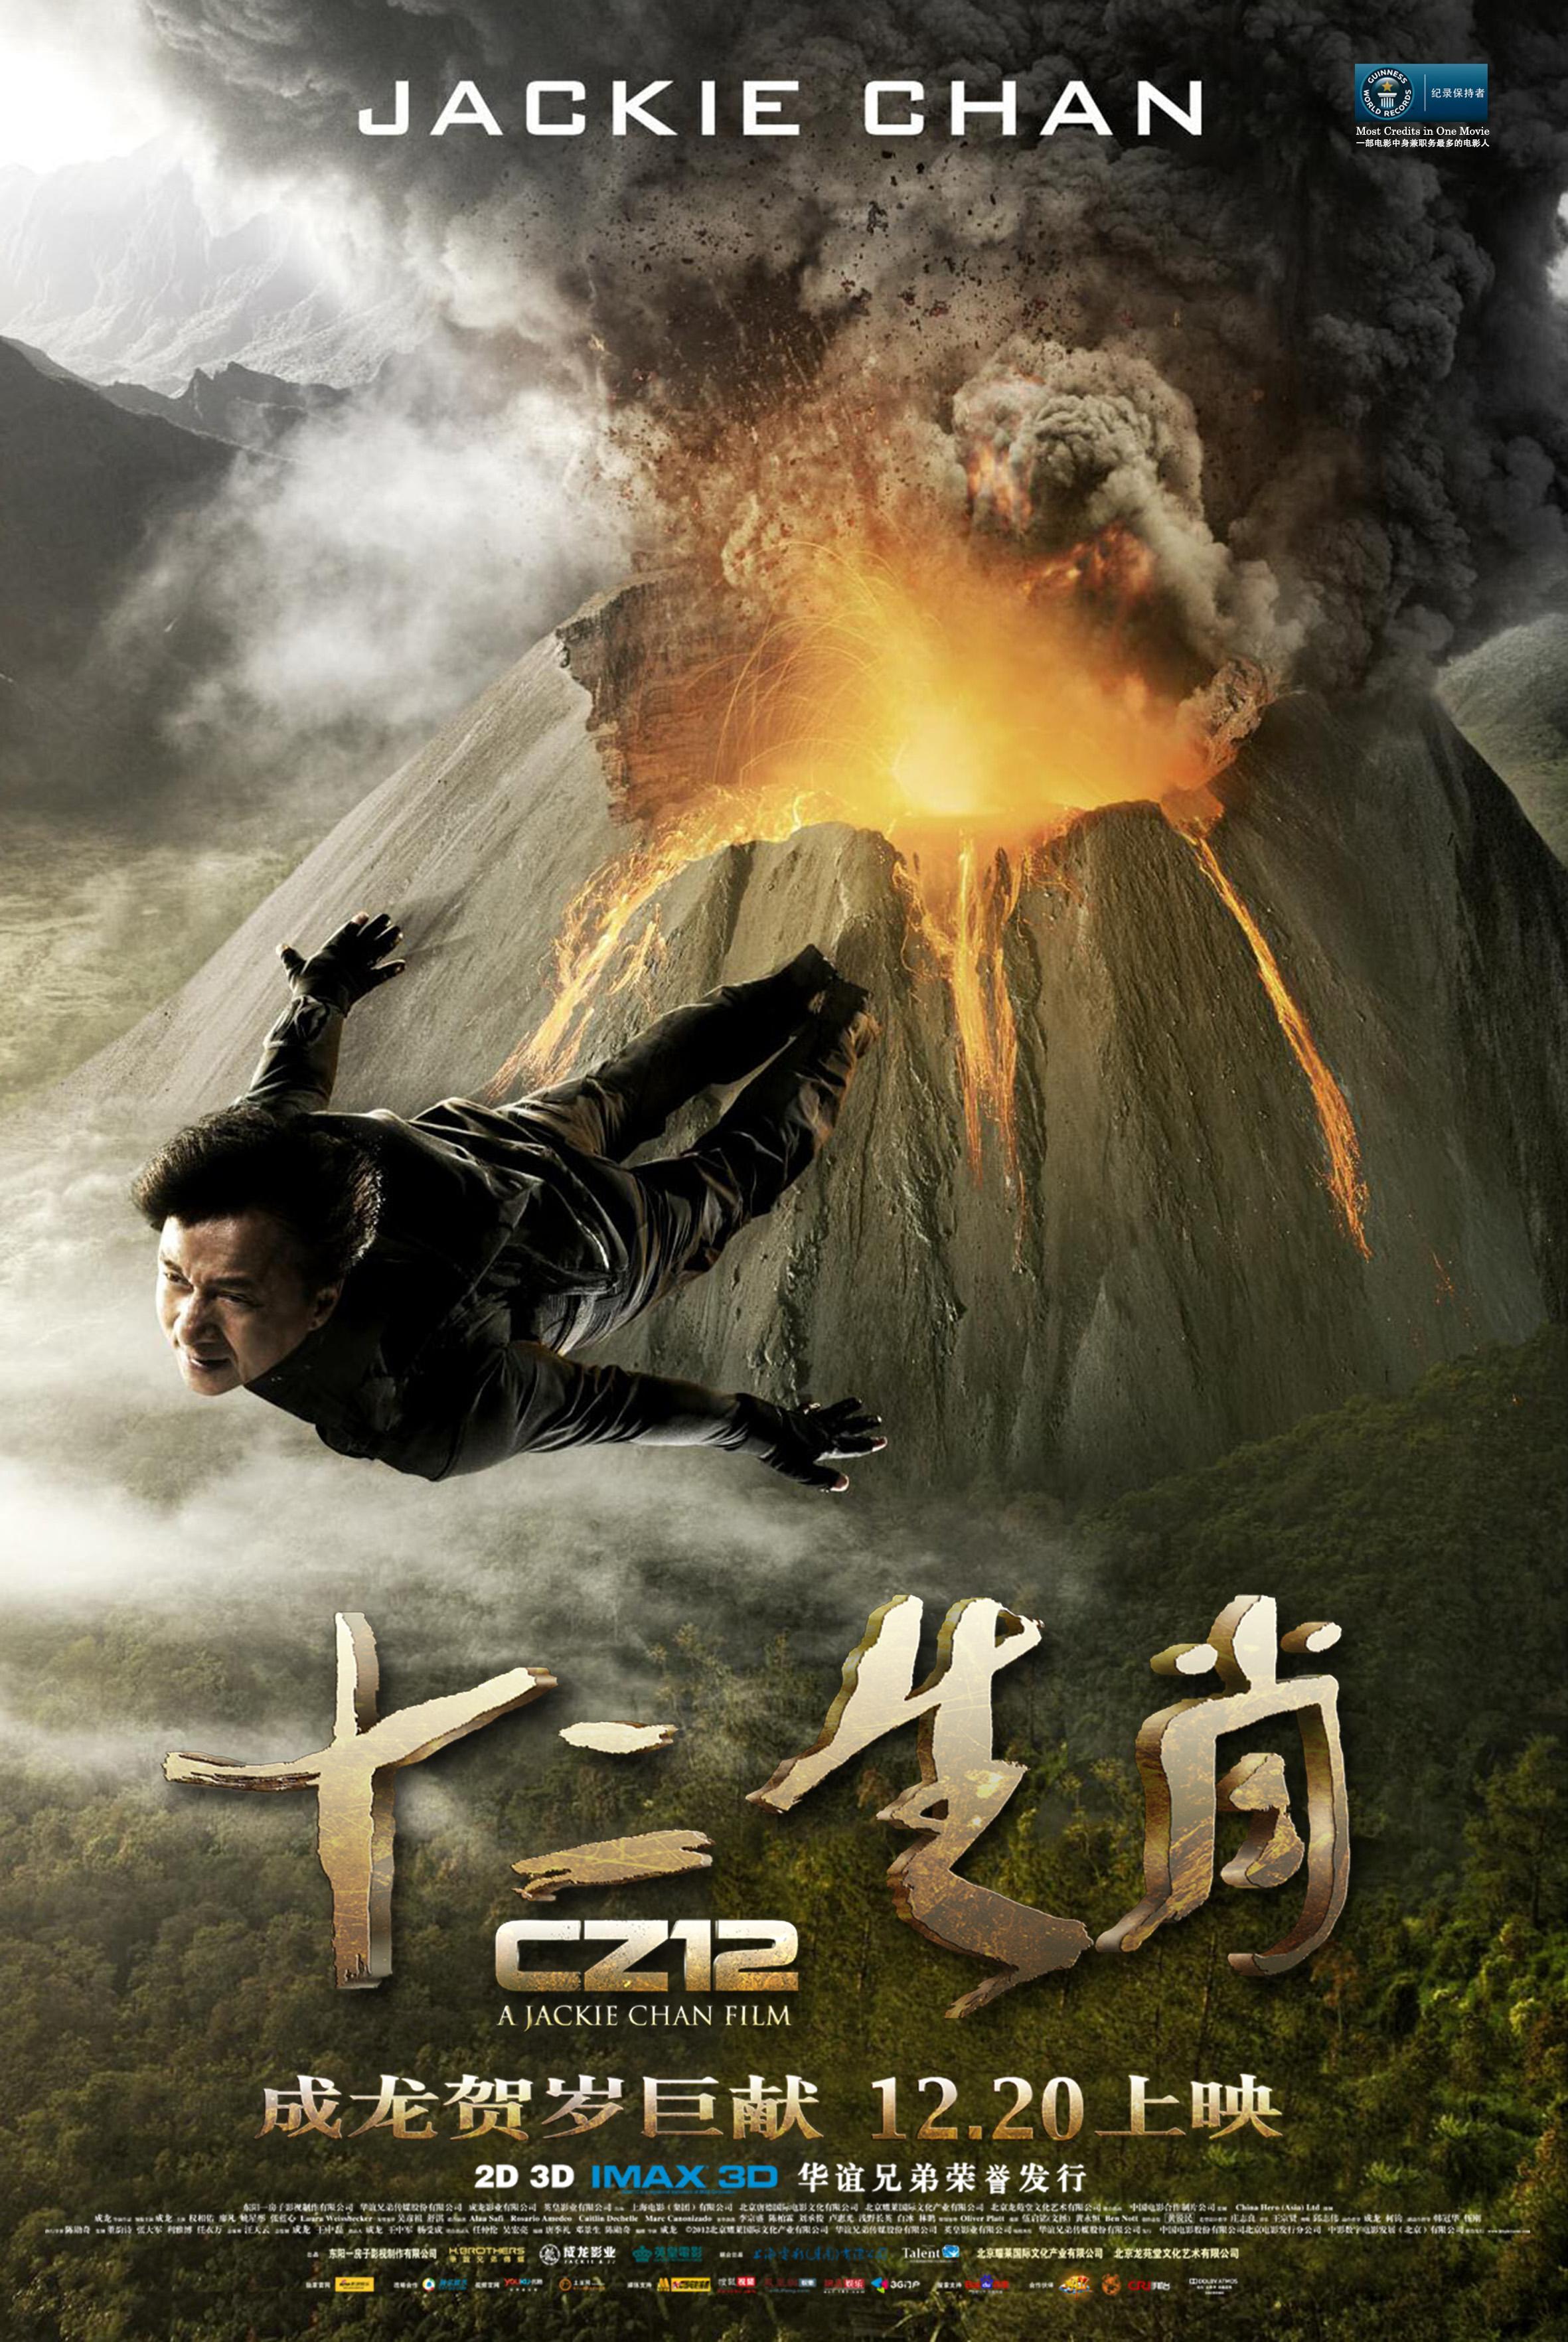 Постер фильма Доспехи Бога 3: Миссия Зодиак | Chinese Zodiac